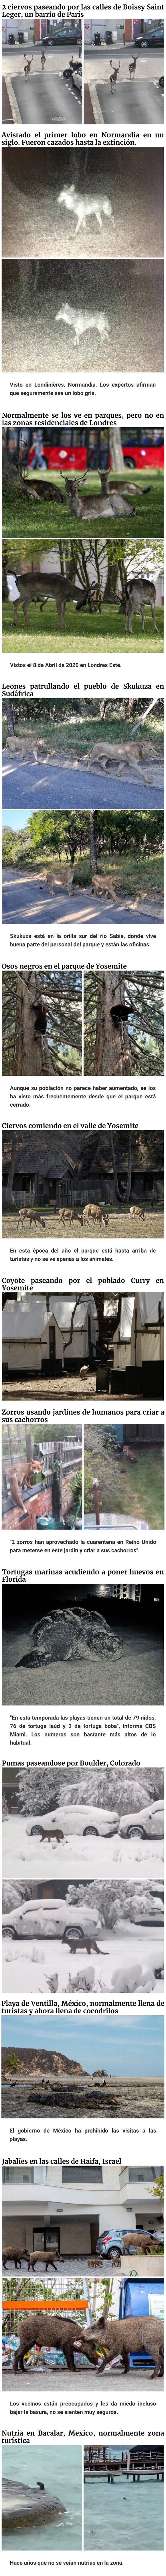 13601 - Con los humanos en cuarentena, los animales se pasean por las ciudades